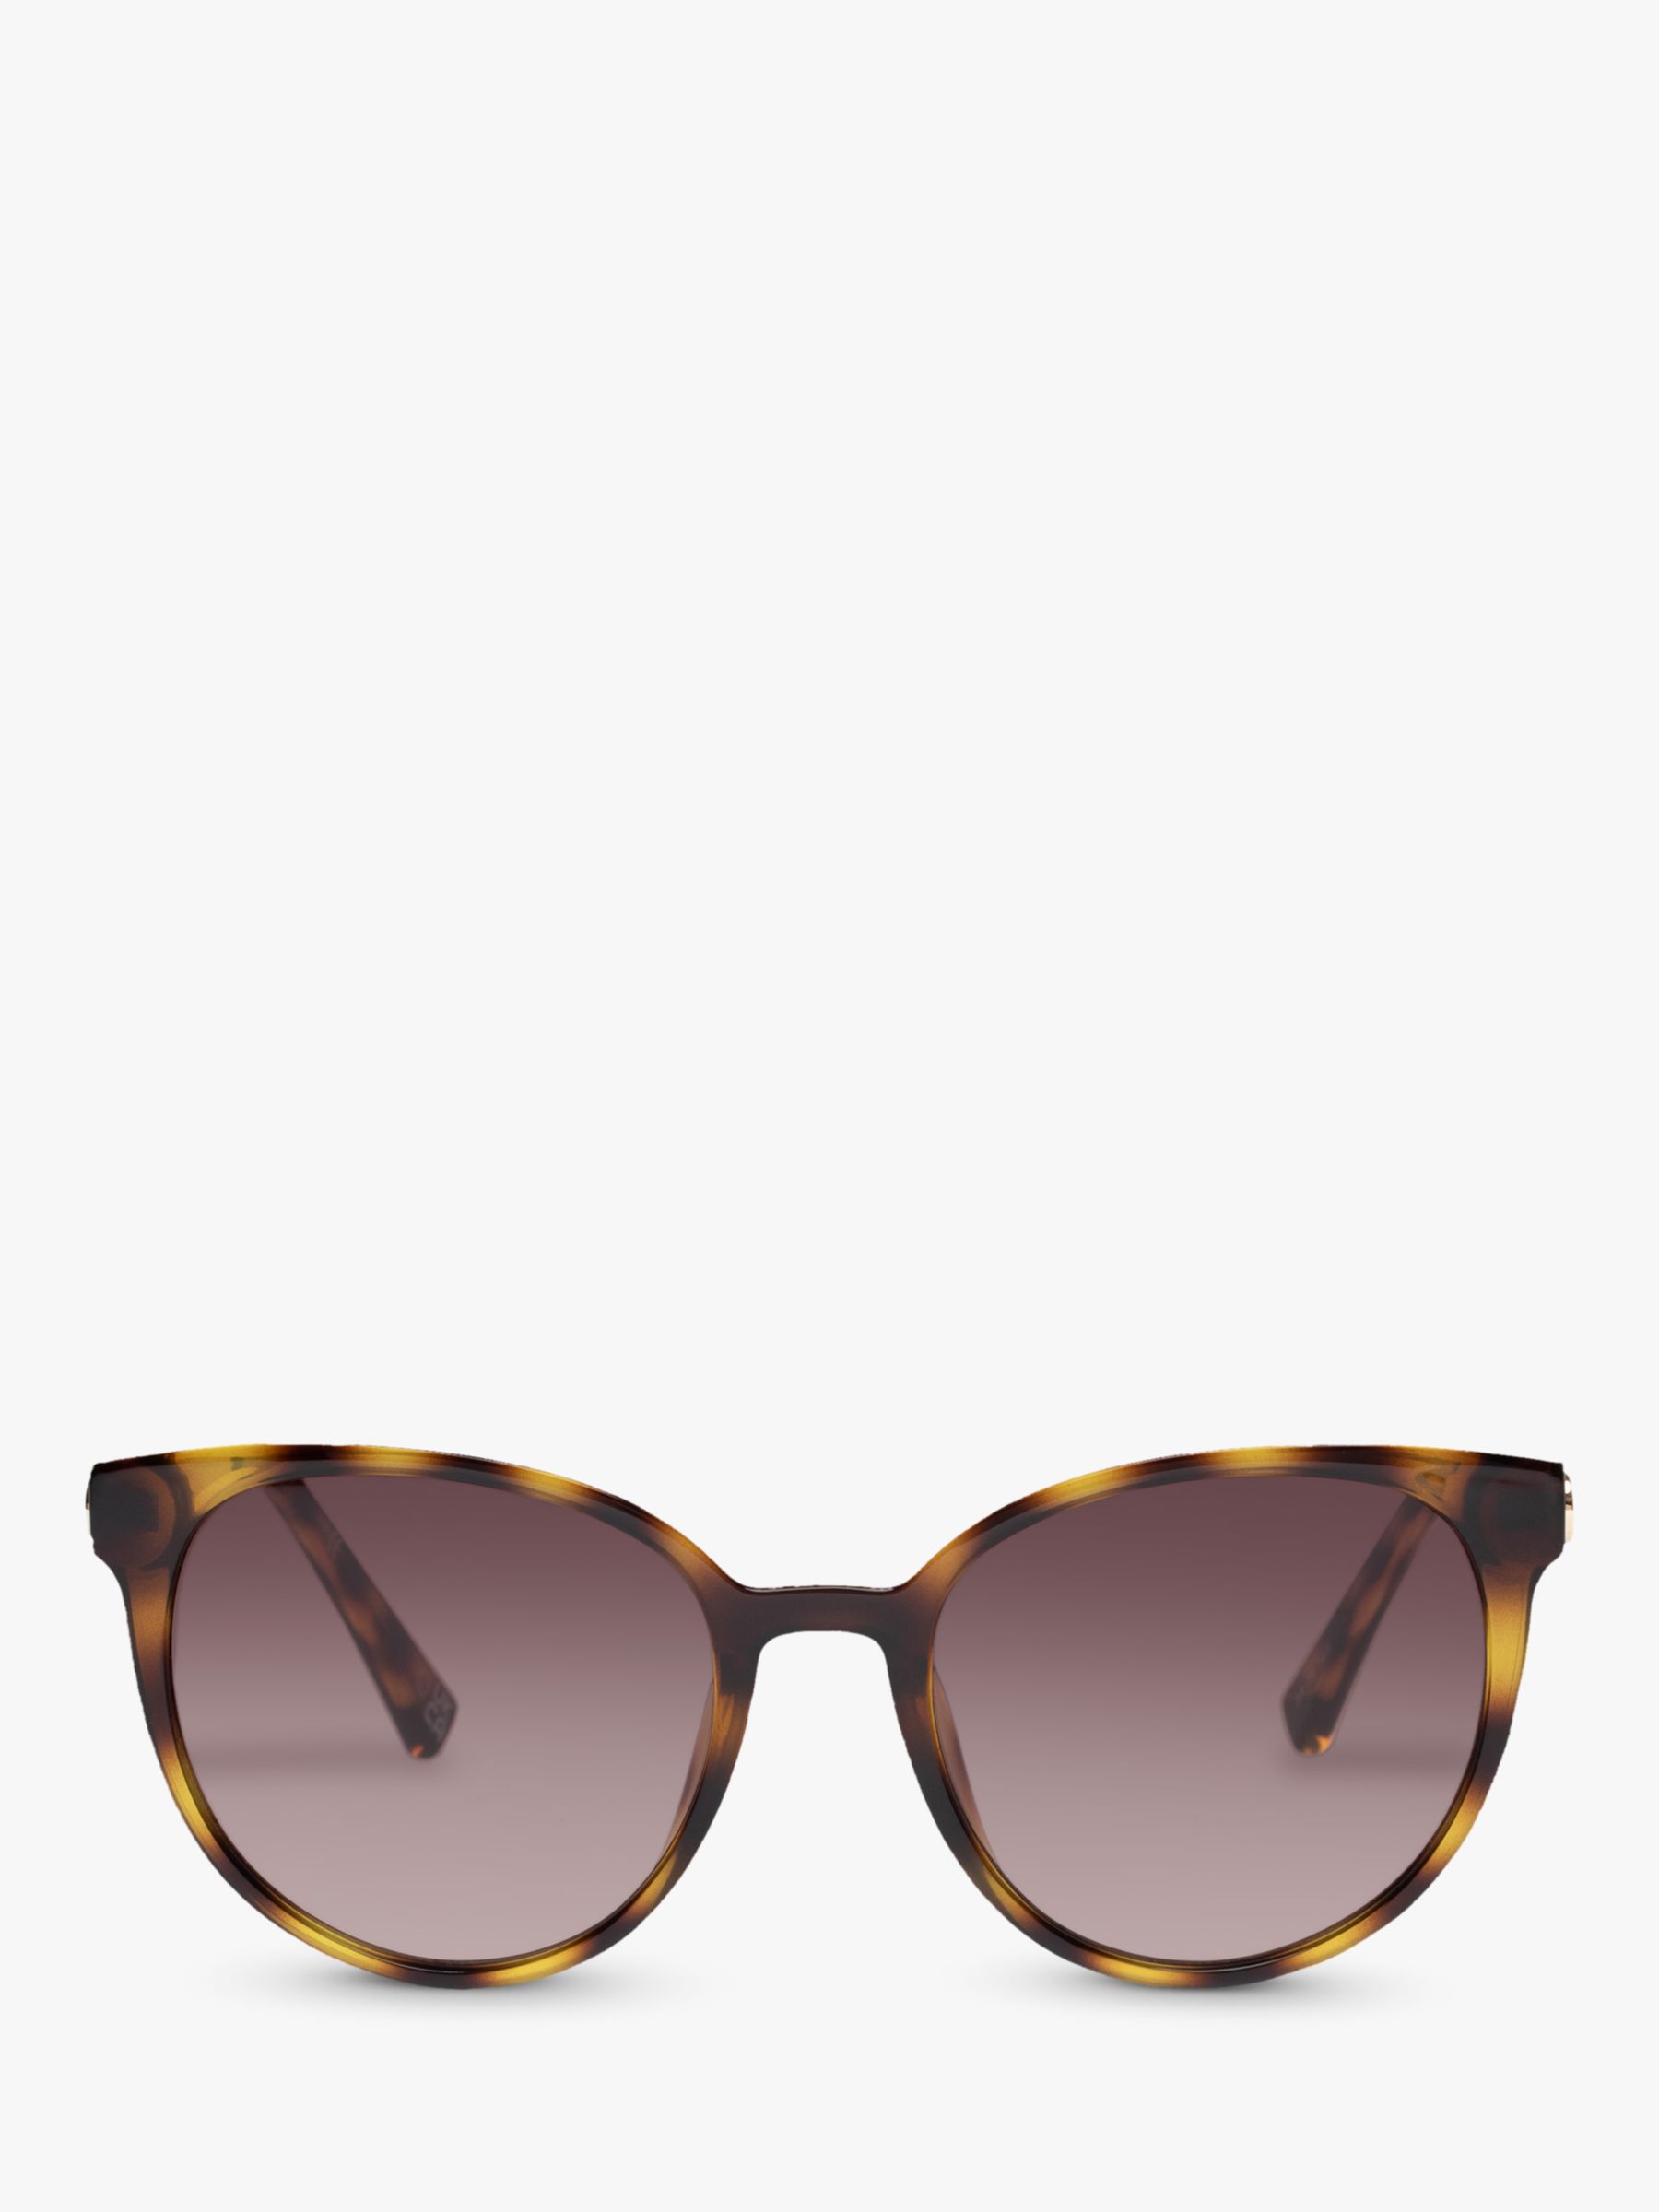 Le Specs L5000172 Women's Contention Oval Sunglasses, Tortoise/Brown ...